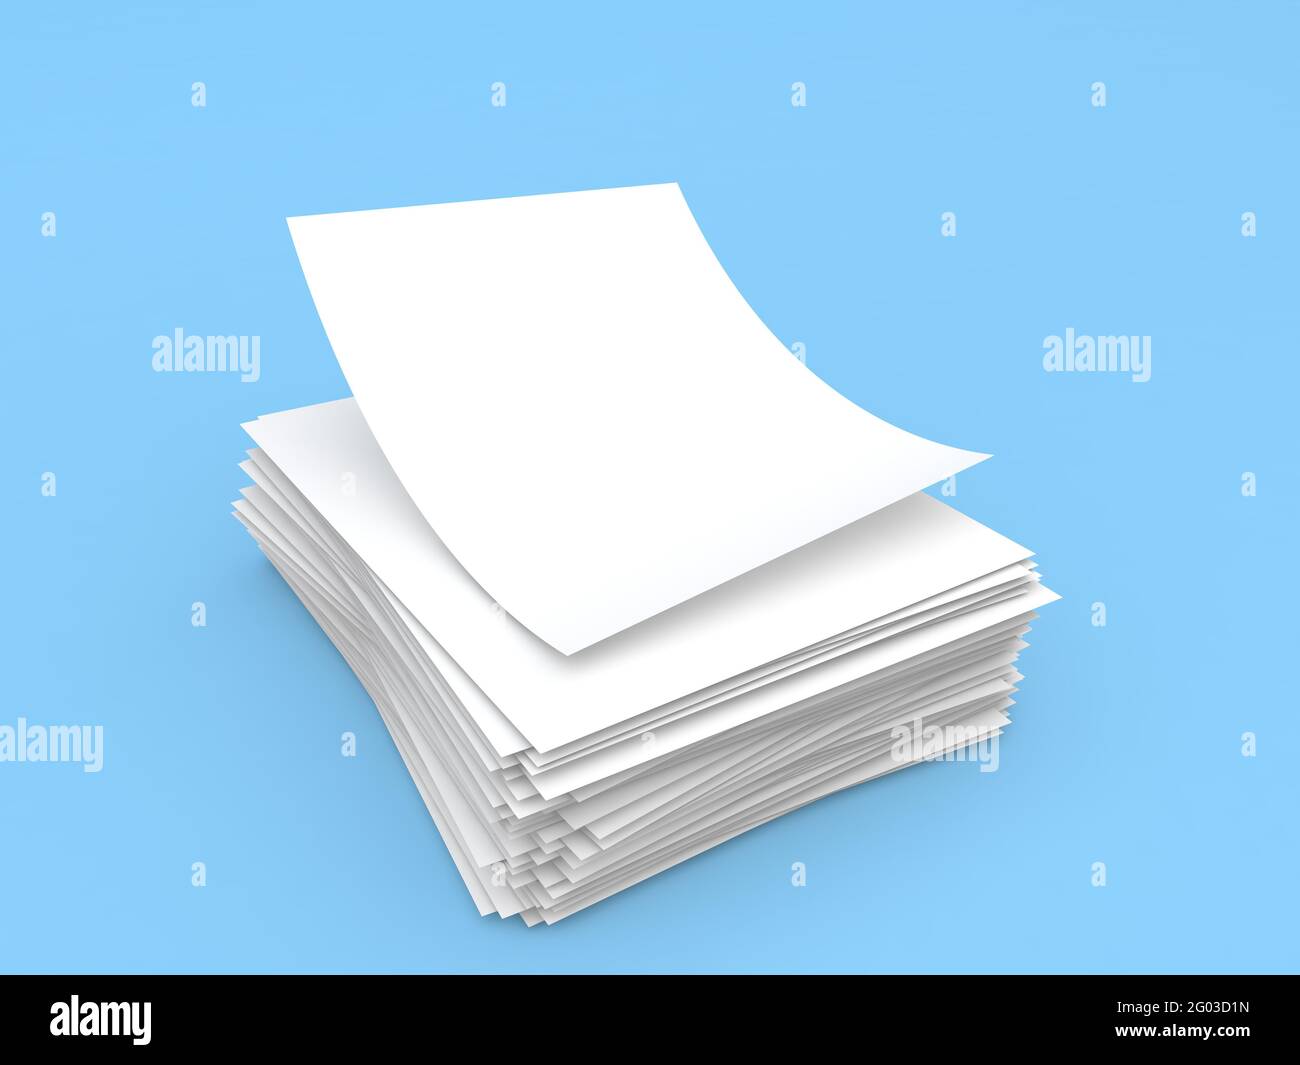 Risma di carta A4 su sfondo blu. illustrazione del rendering 3d